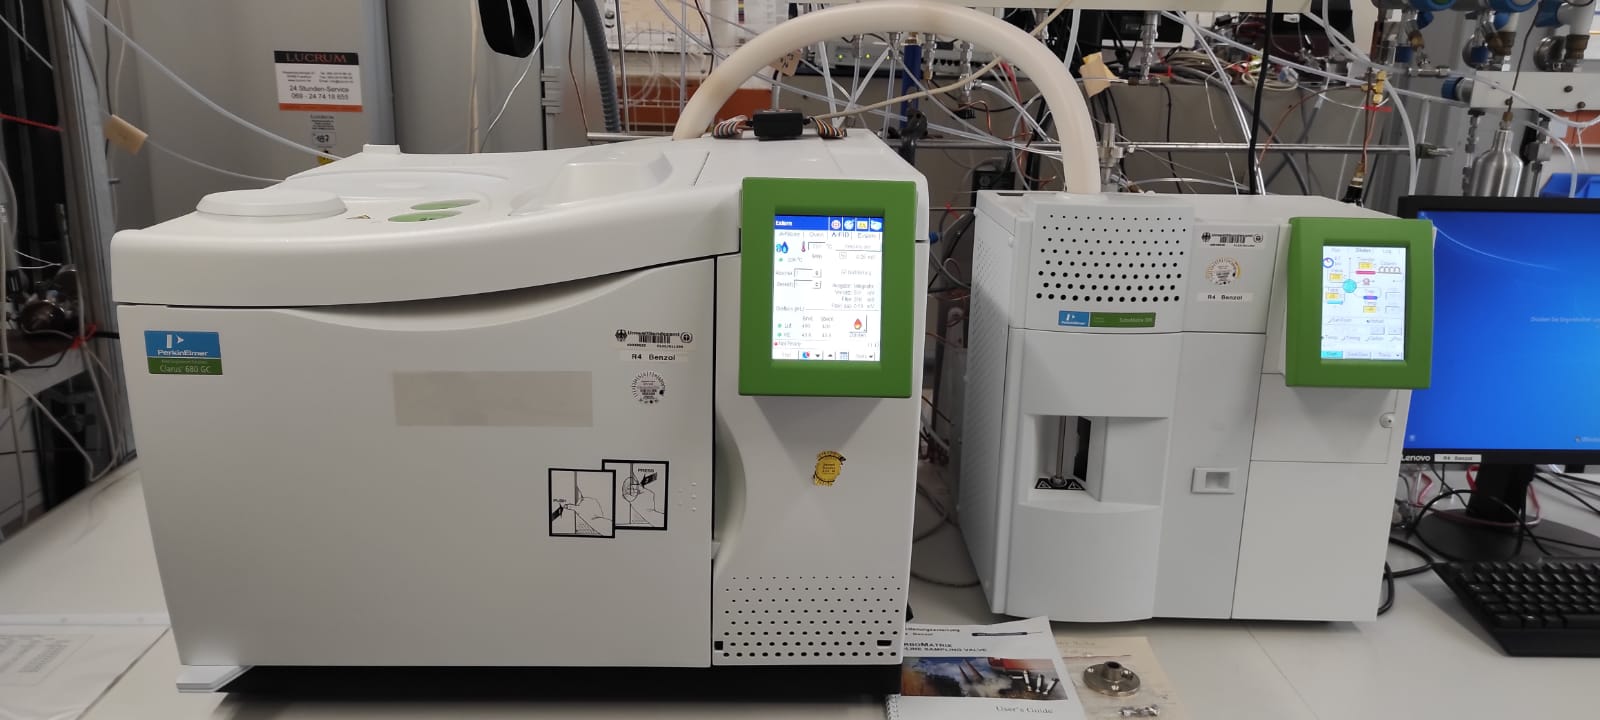 Gaschromatographie zur Bestimmung von Benzol und Benzolderivaten (BTEX)